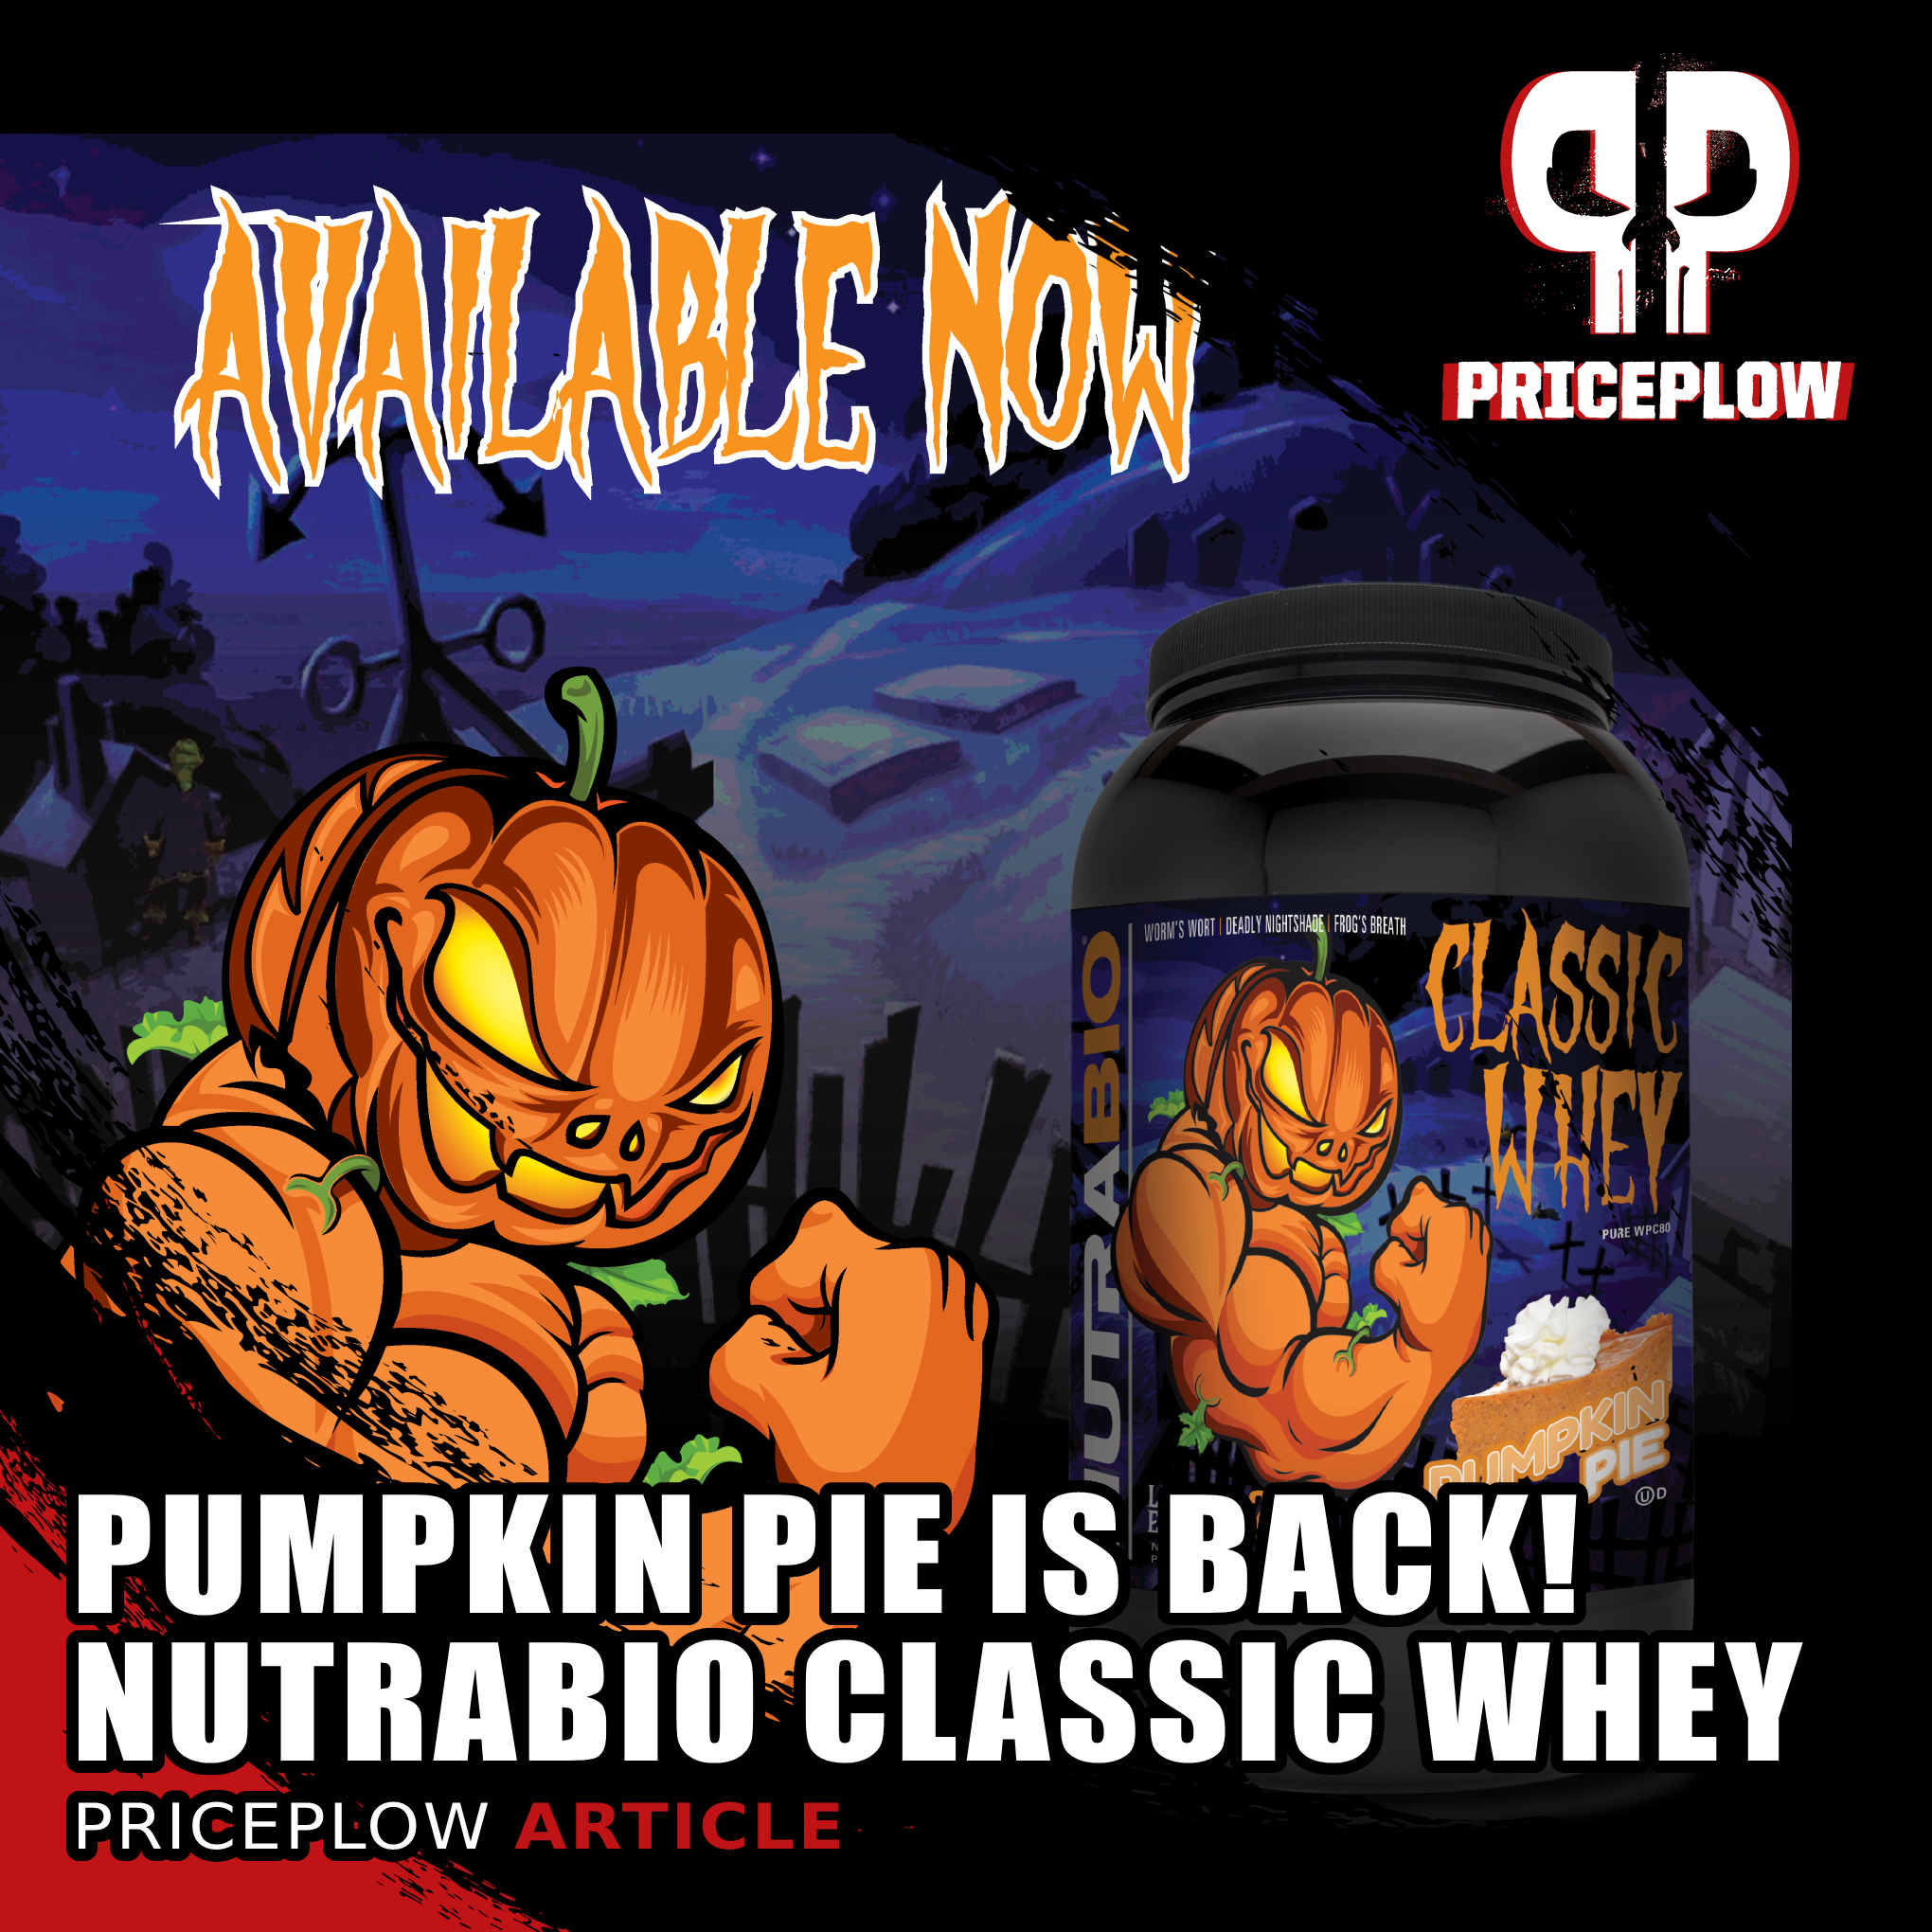 NutraBio Classic Whey Pumpkin Pie